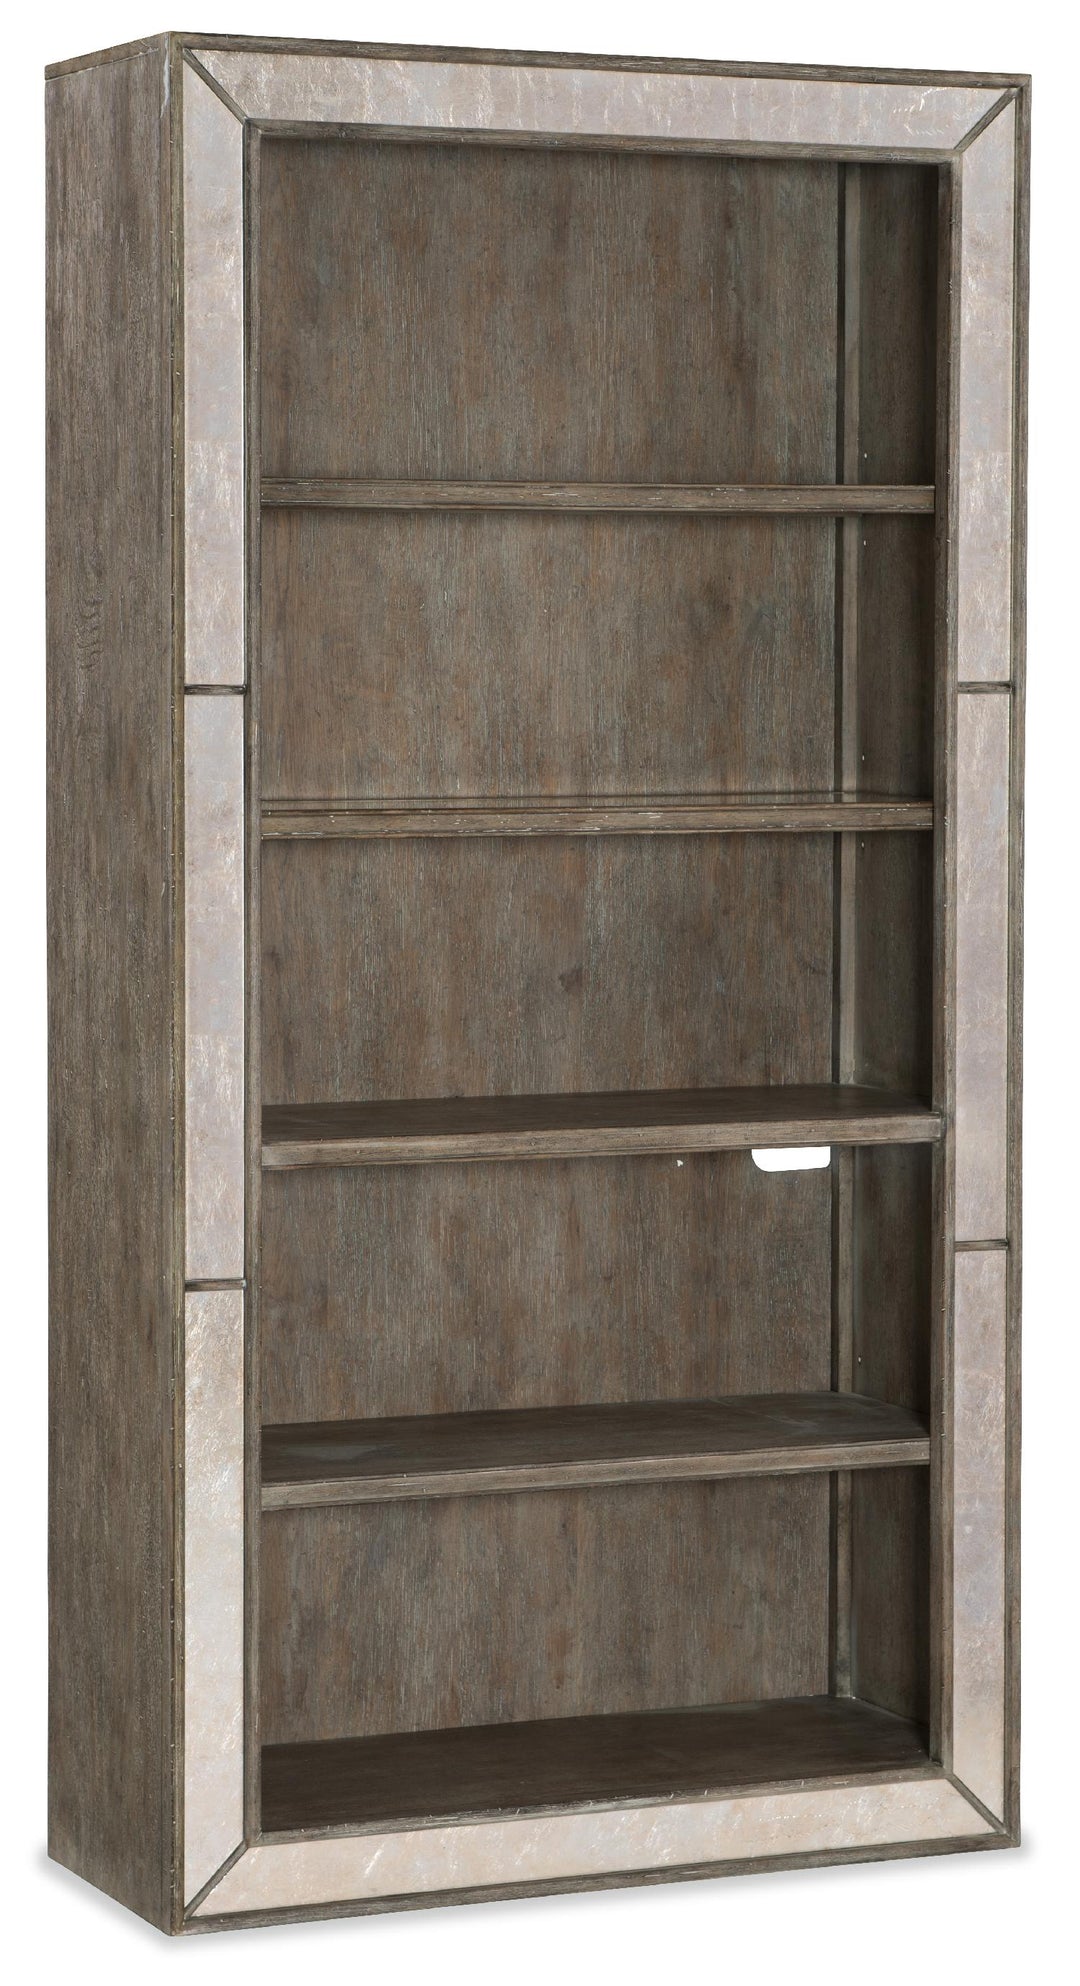 American Home Furniture | Hooker Furniture - Rustic Glam Bookcase